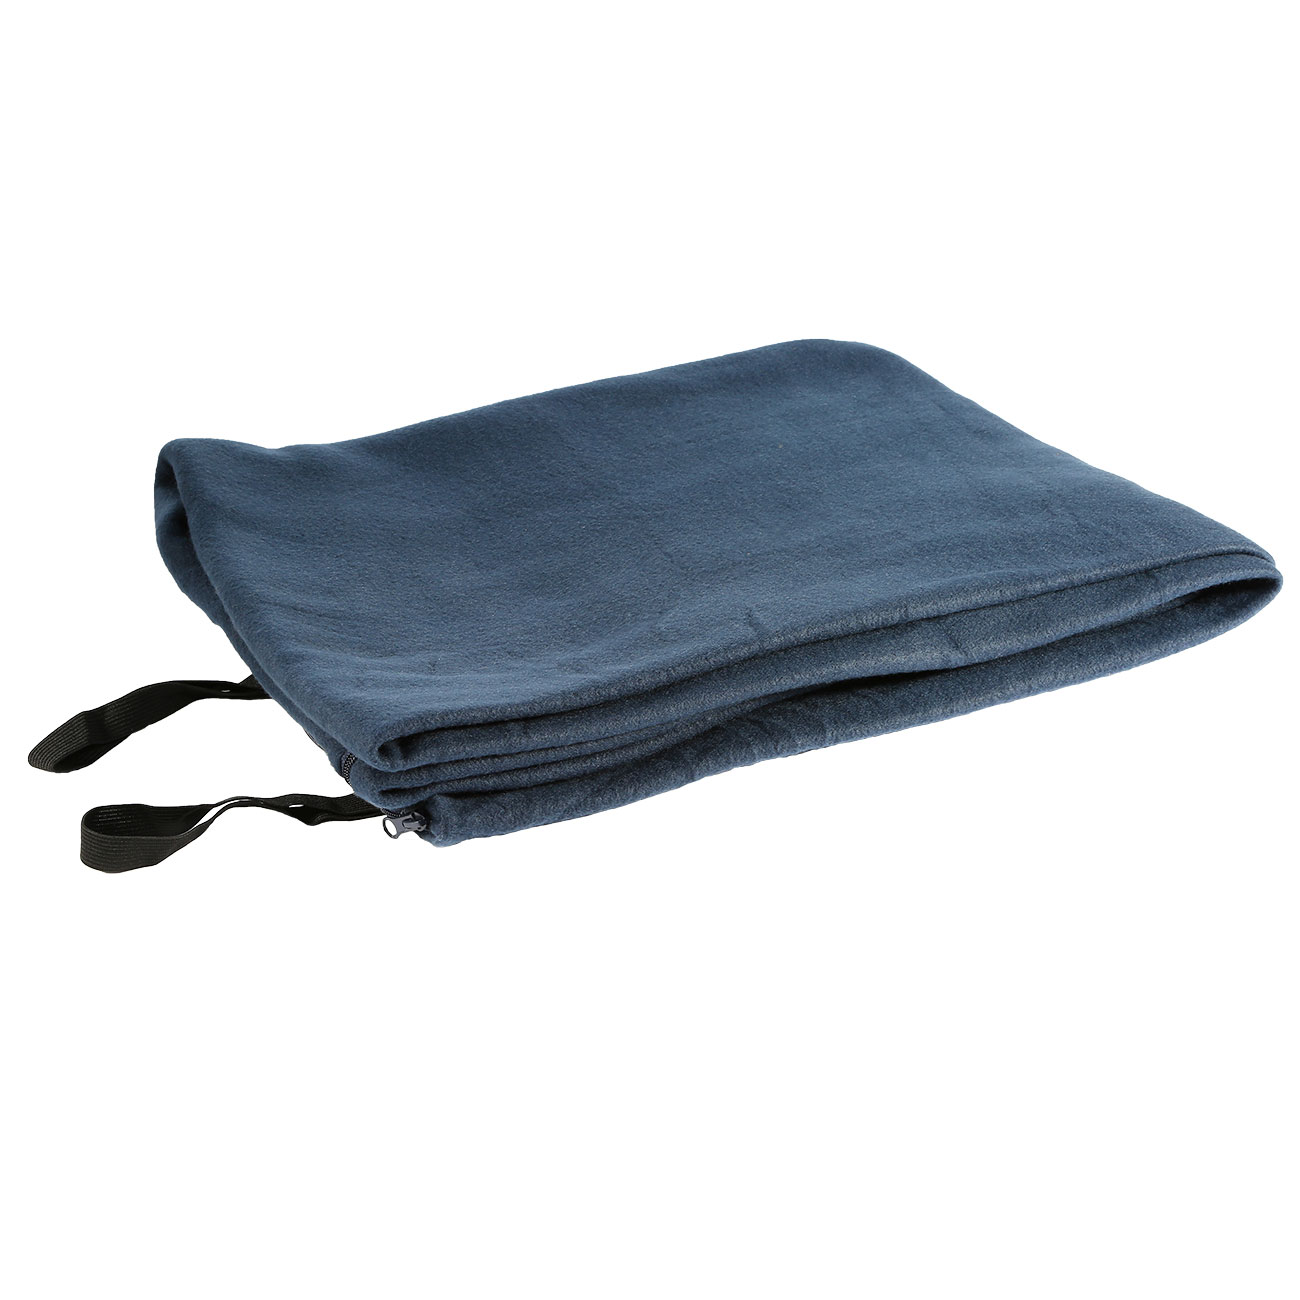 Fosco Schlafsackdecke Fleece blau - auch als Inlett verwendbar Bild 2